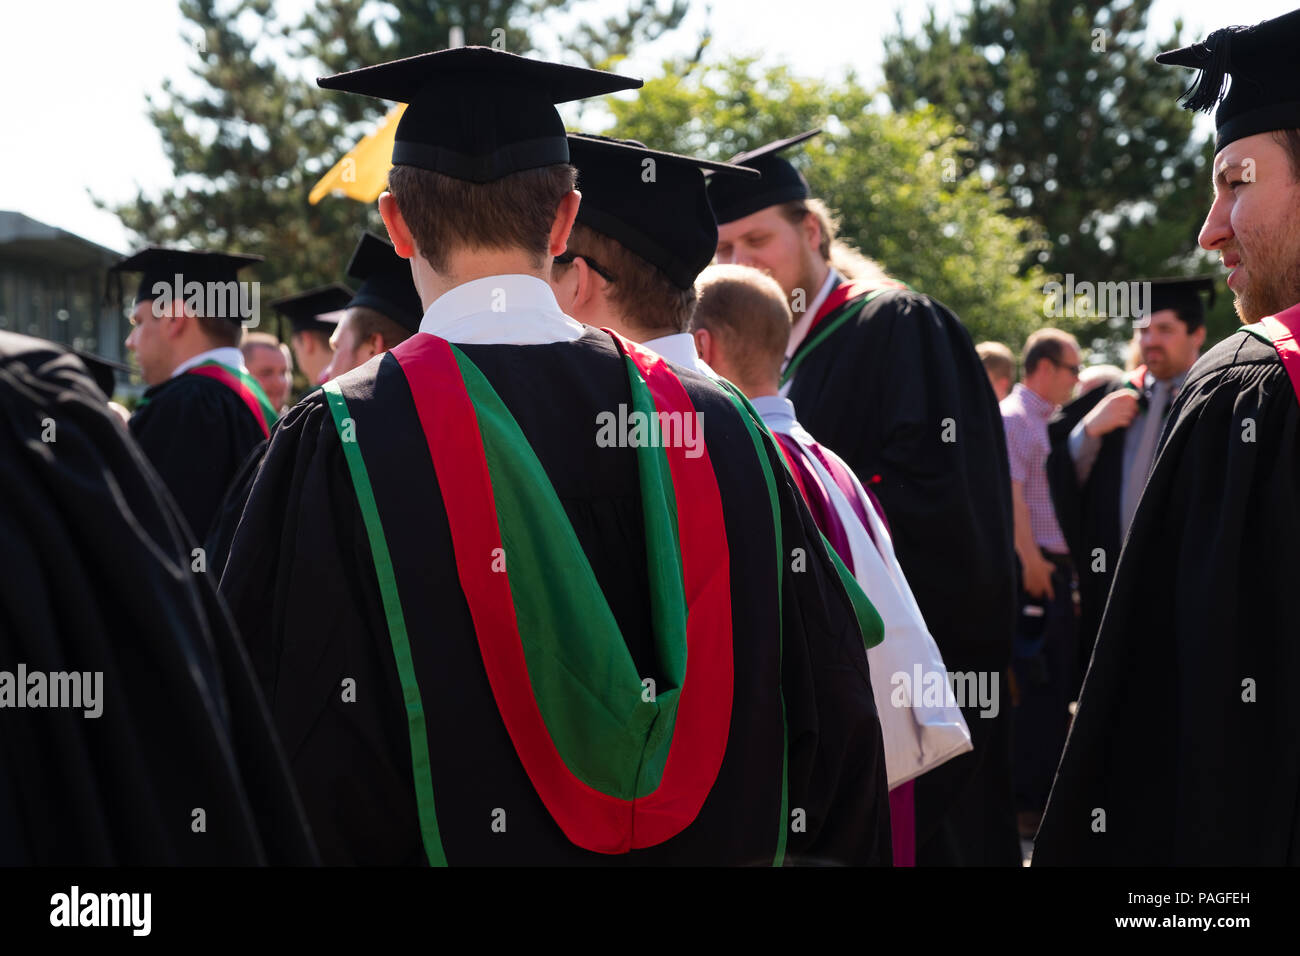 L'enseignement supérieur au Royaume-Uni : les finissants d'université d'Aberystwyth, à leurs conseils et le mortier traditionnel robes académiques noir. Juillet 2018 Banque D'Images